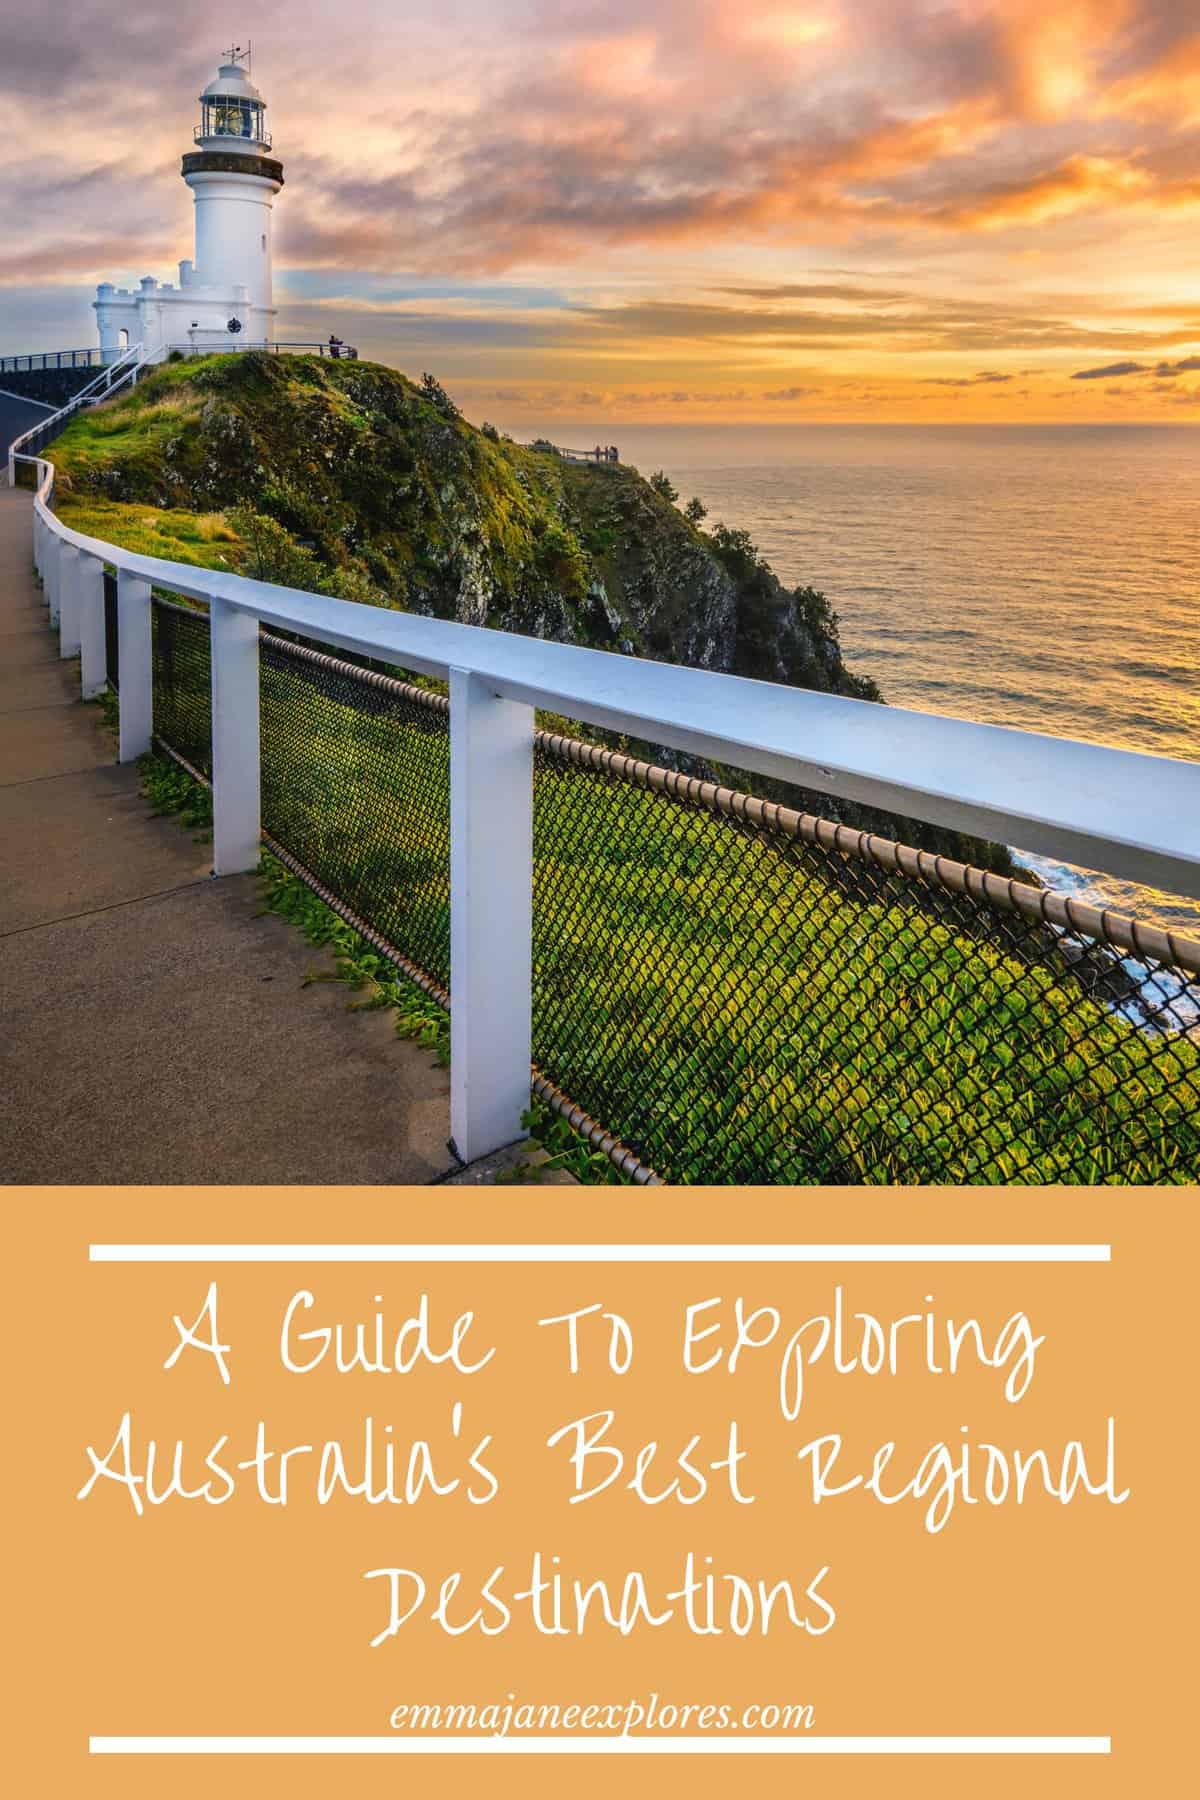 Regional Destinations in Australia - Emma Jane Explores